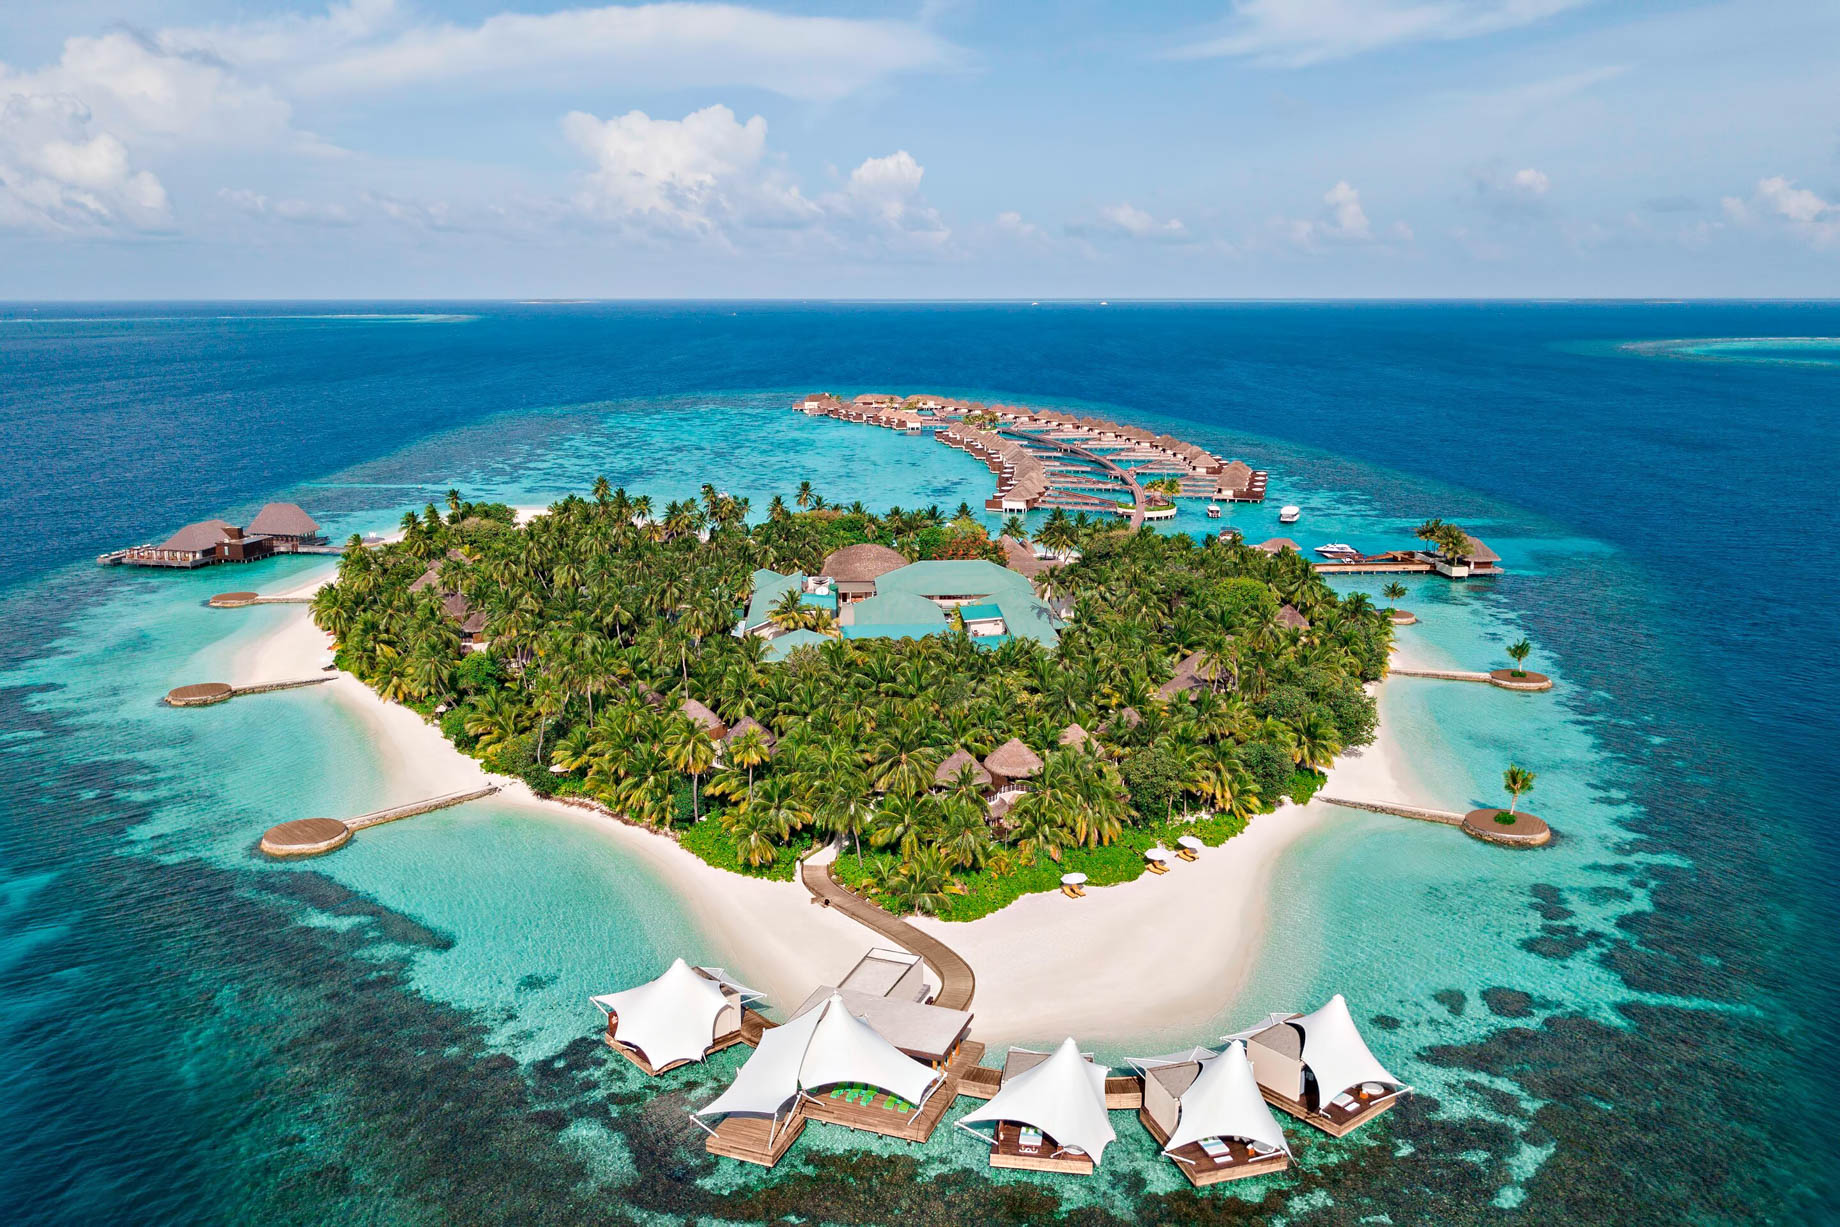 002 – W Maldives Resort – Fesdu Island, Maldives – Private Island Aerial View